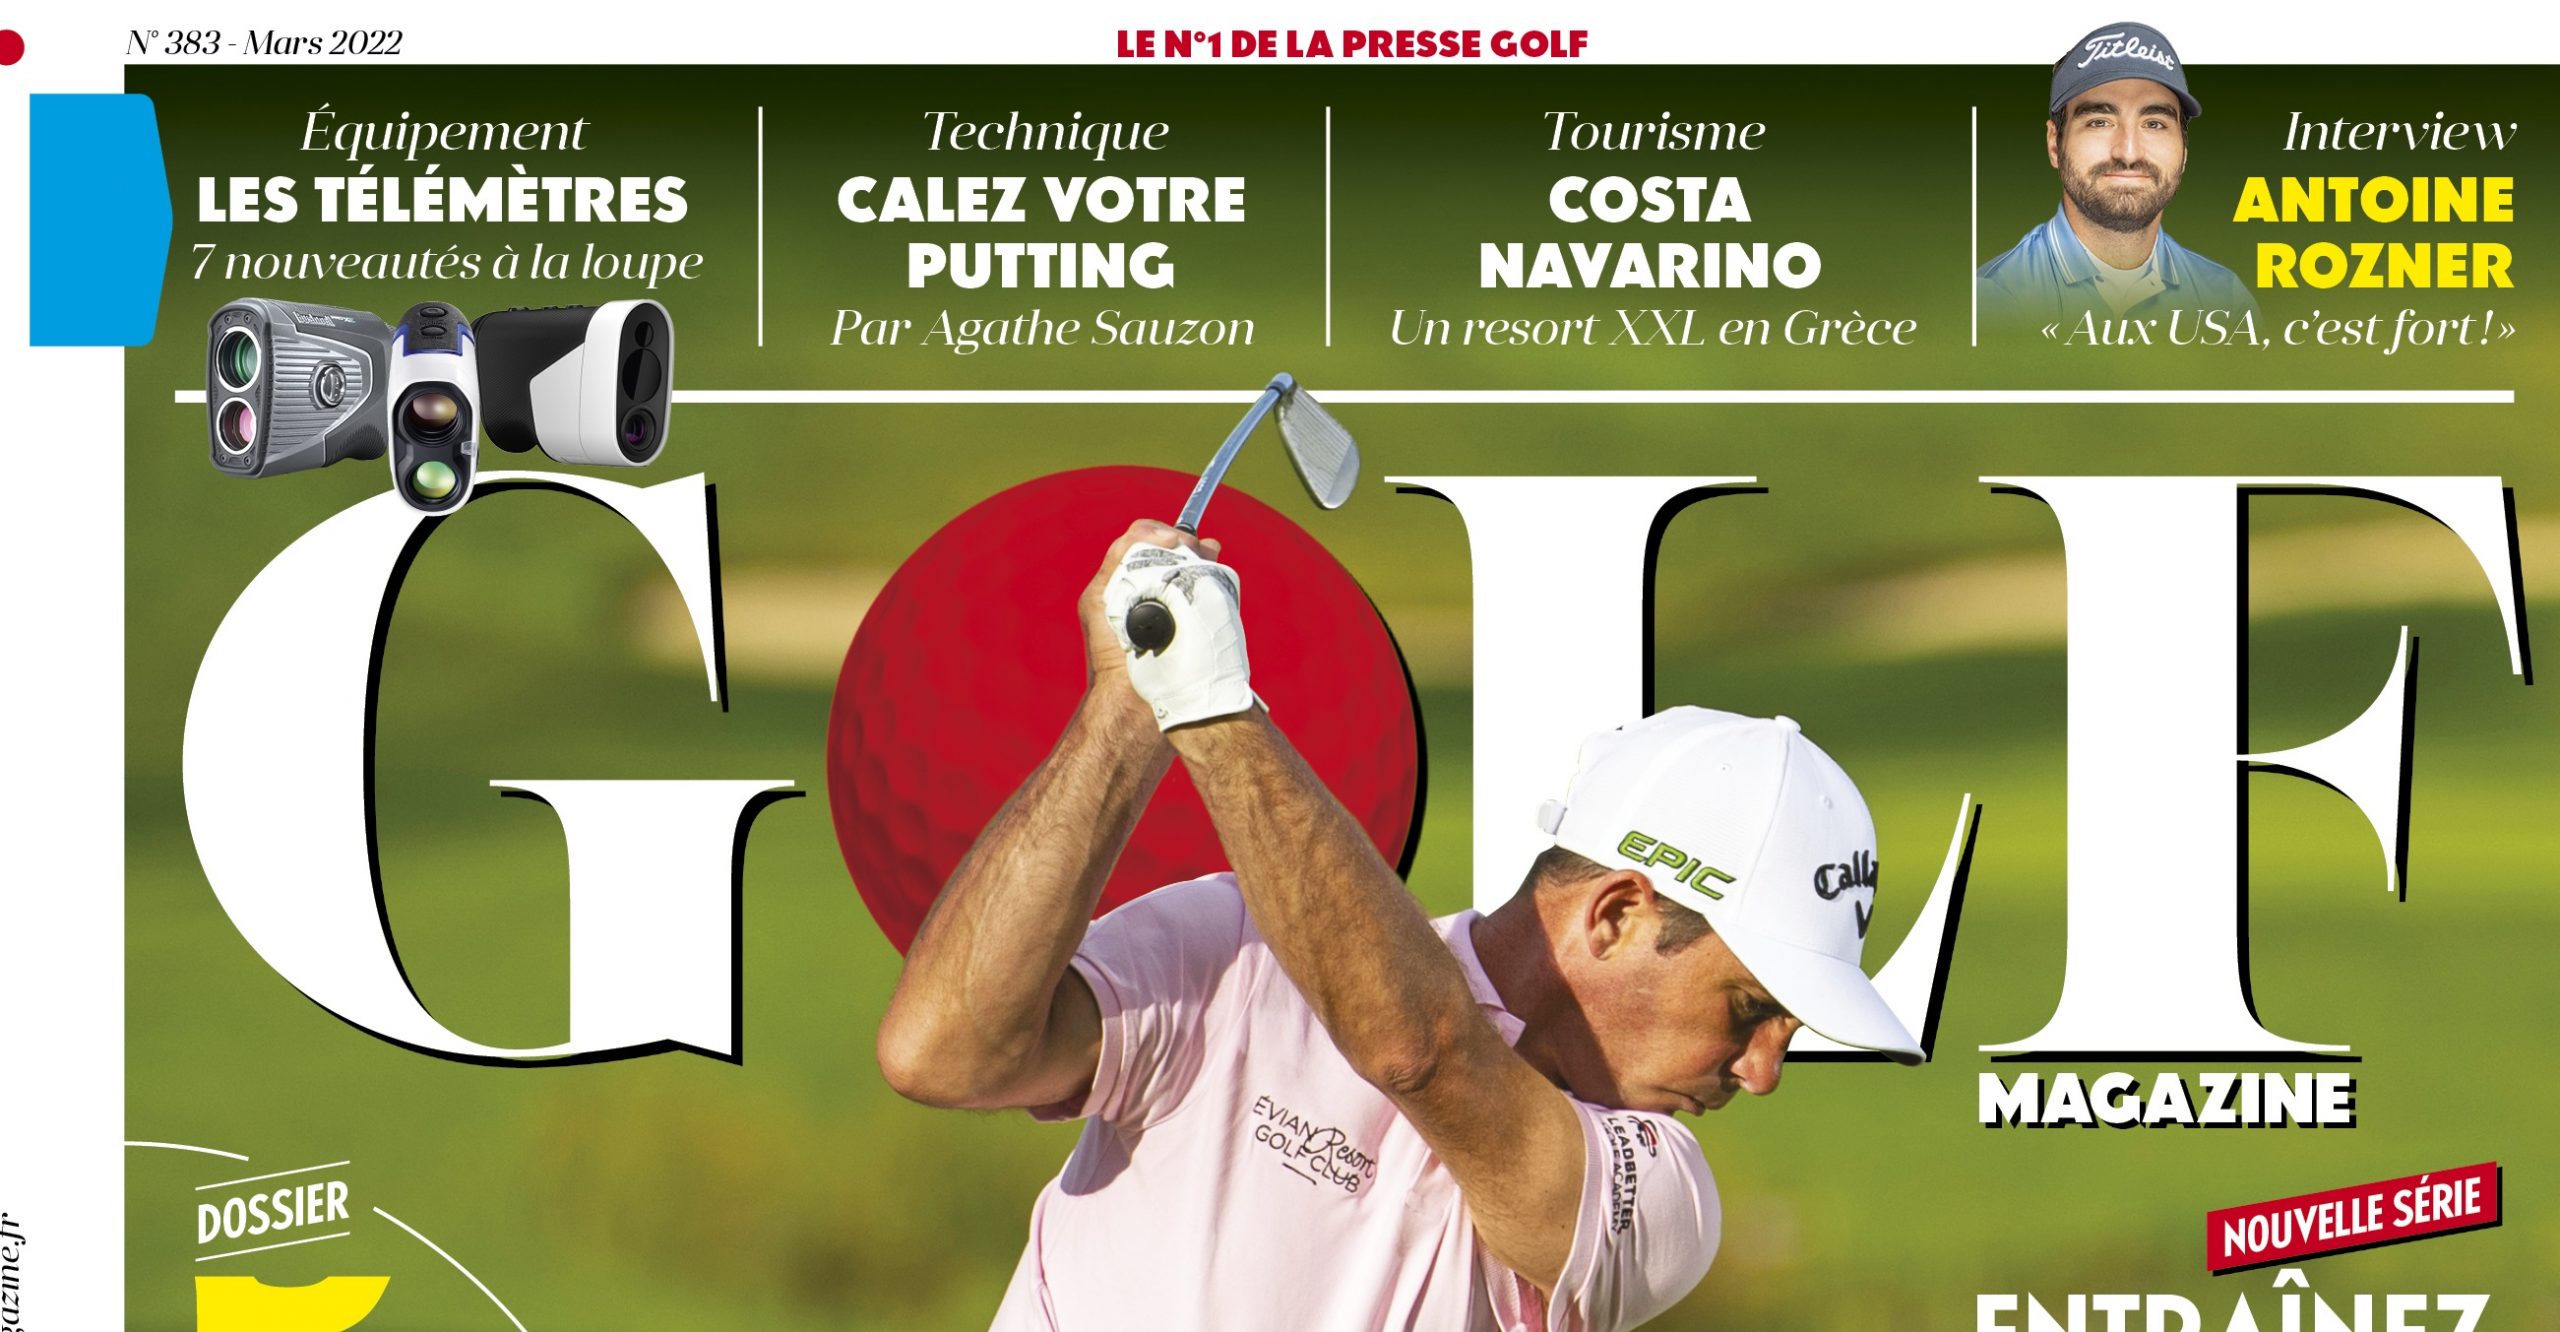 Le Golf Magazine n°383 est en kiosque !